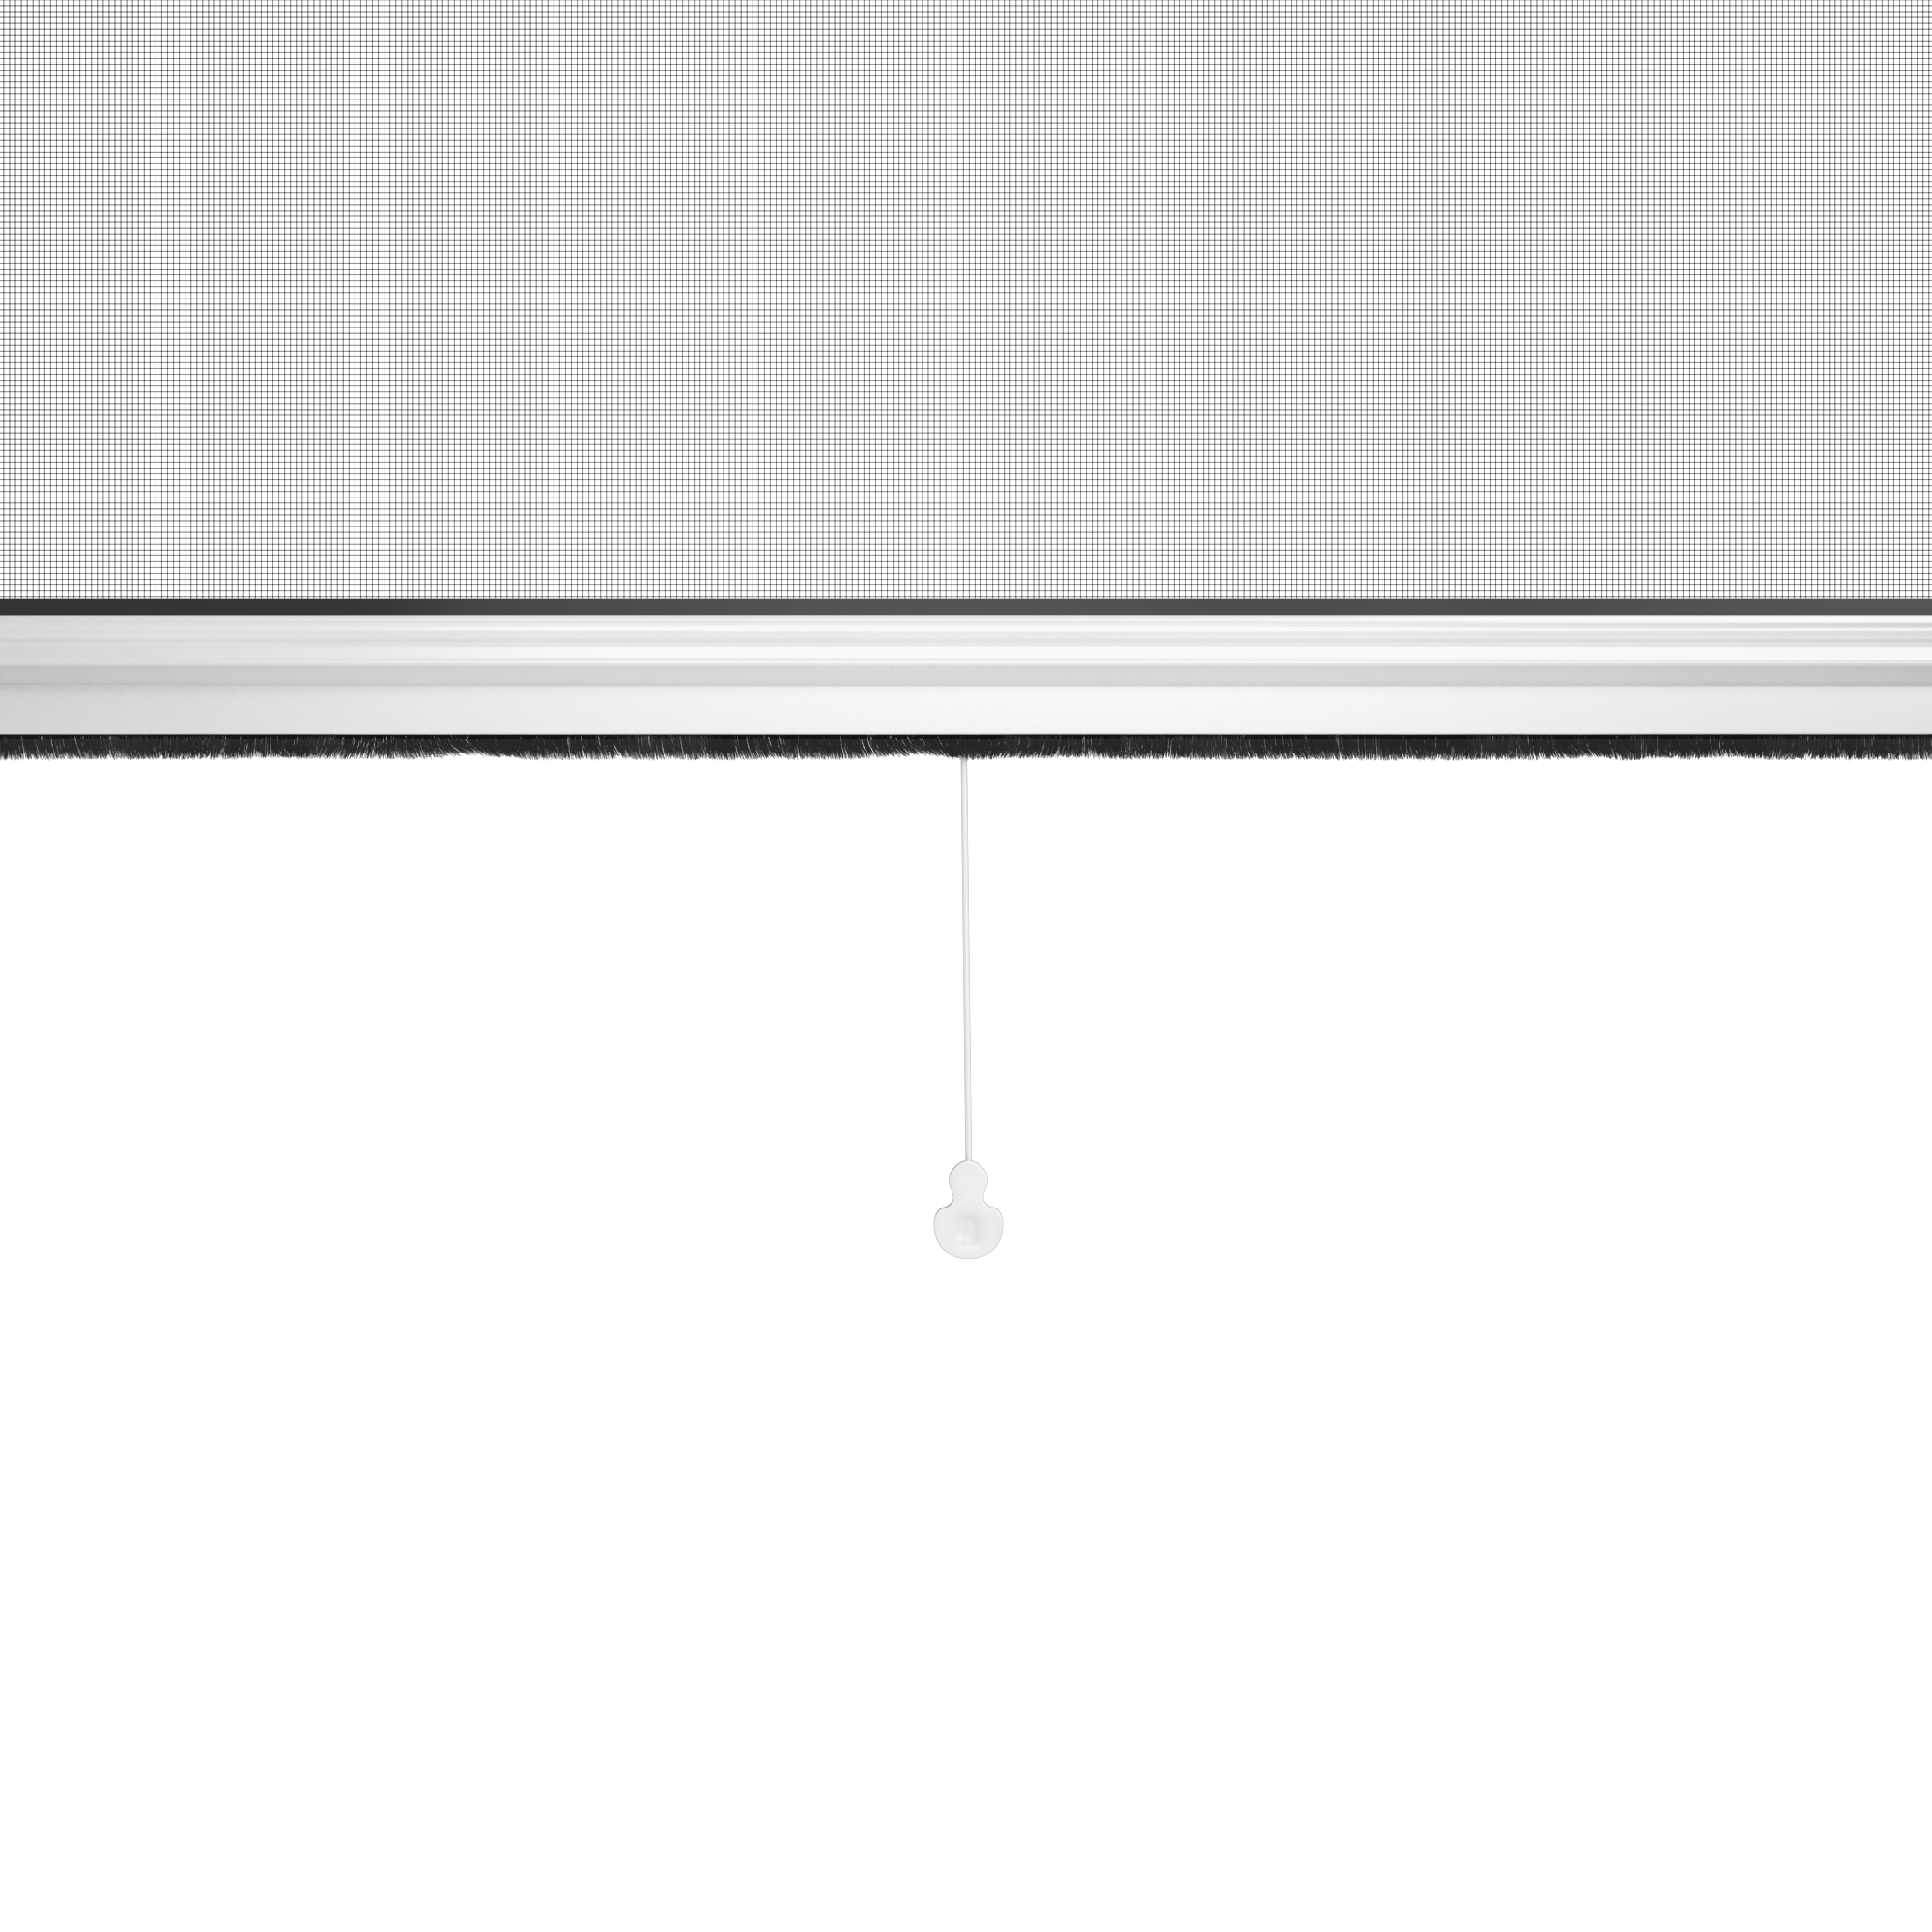 Zanzariera avvolgibile ARTENS per finestra L 130 x H 160 cm bianco - 3